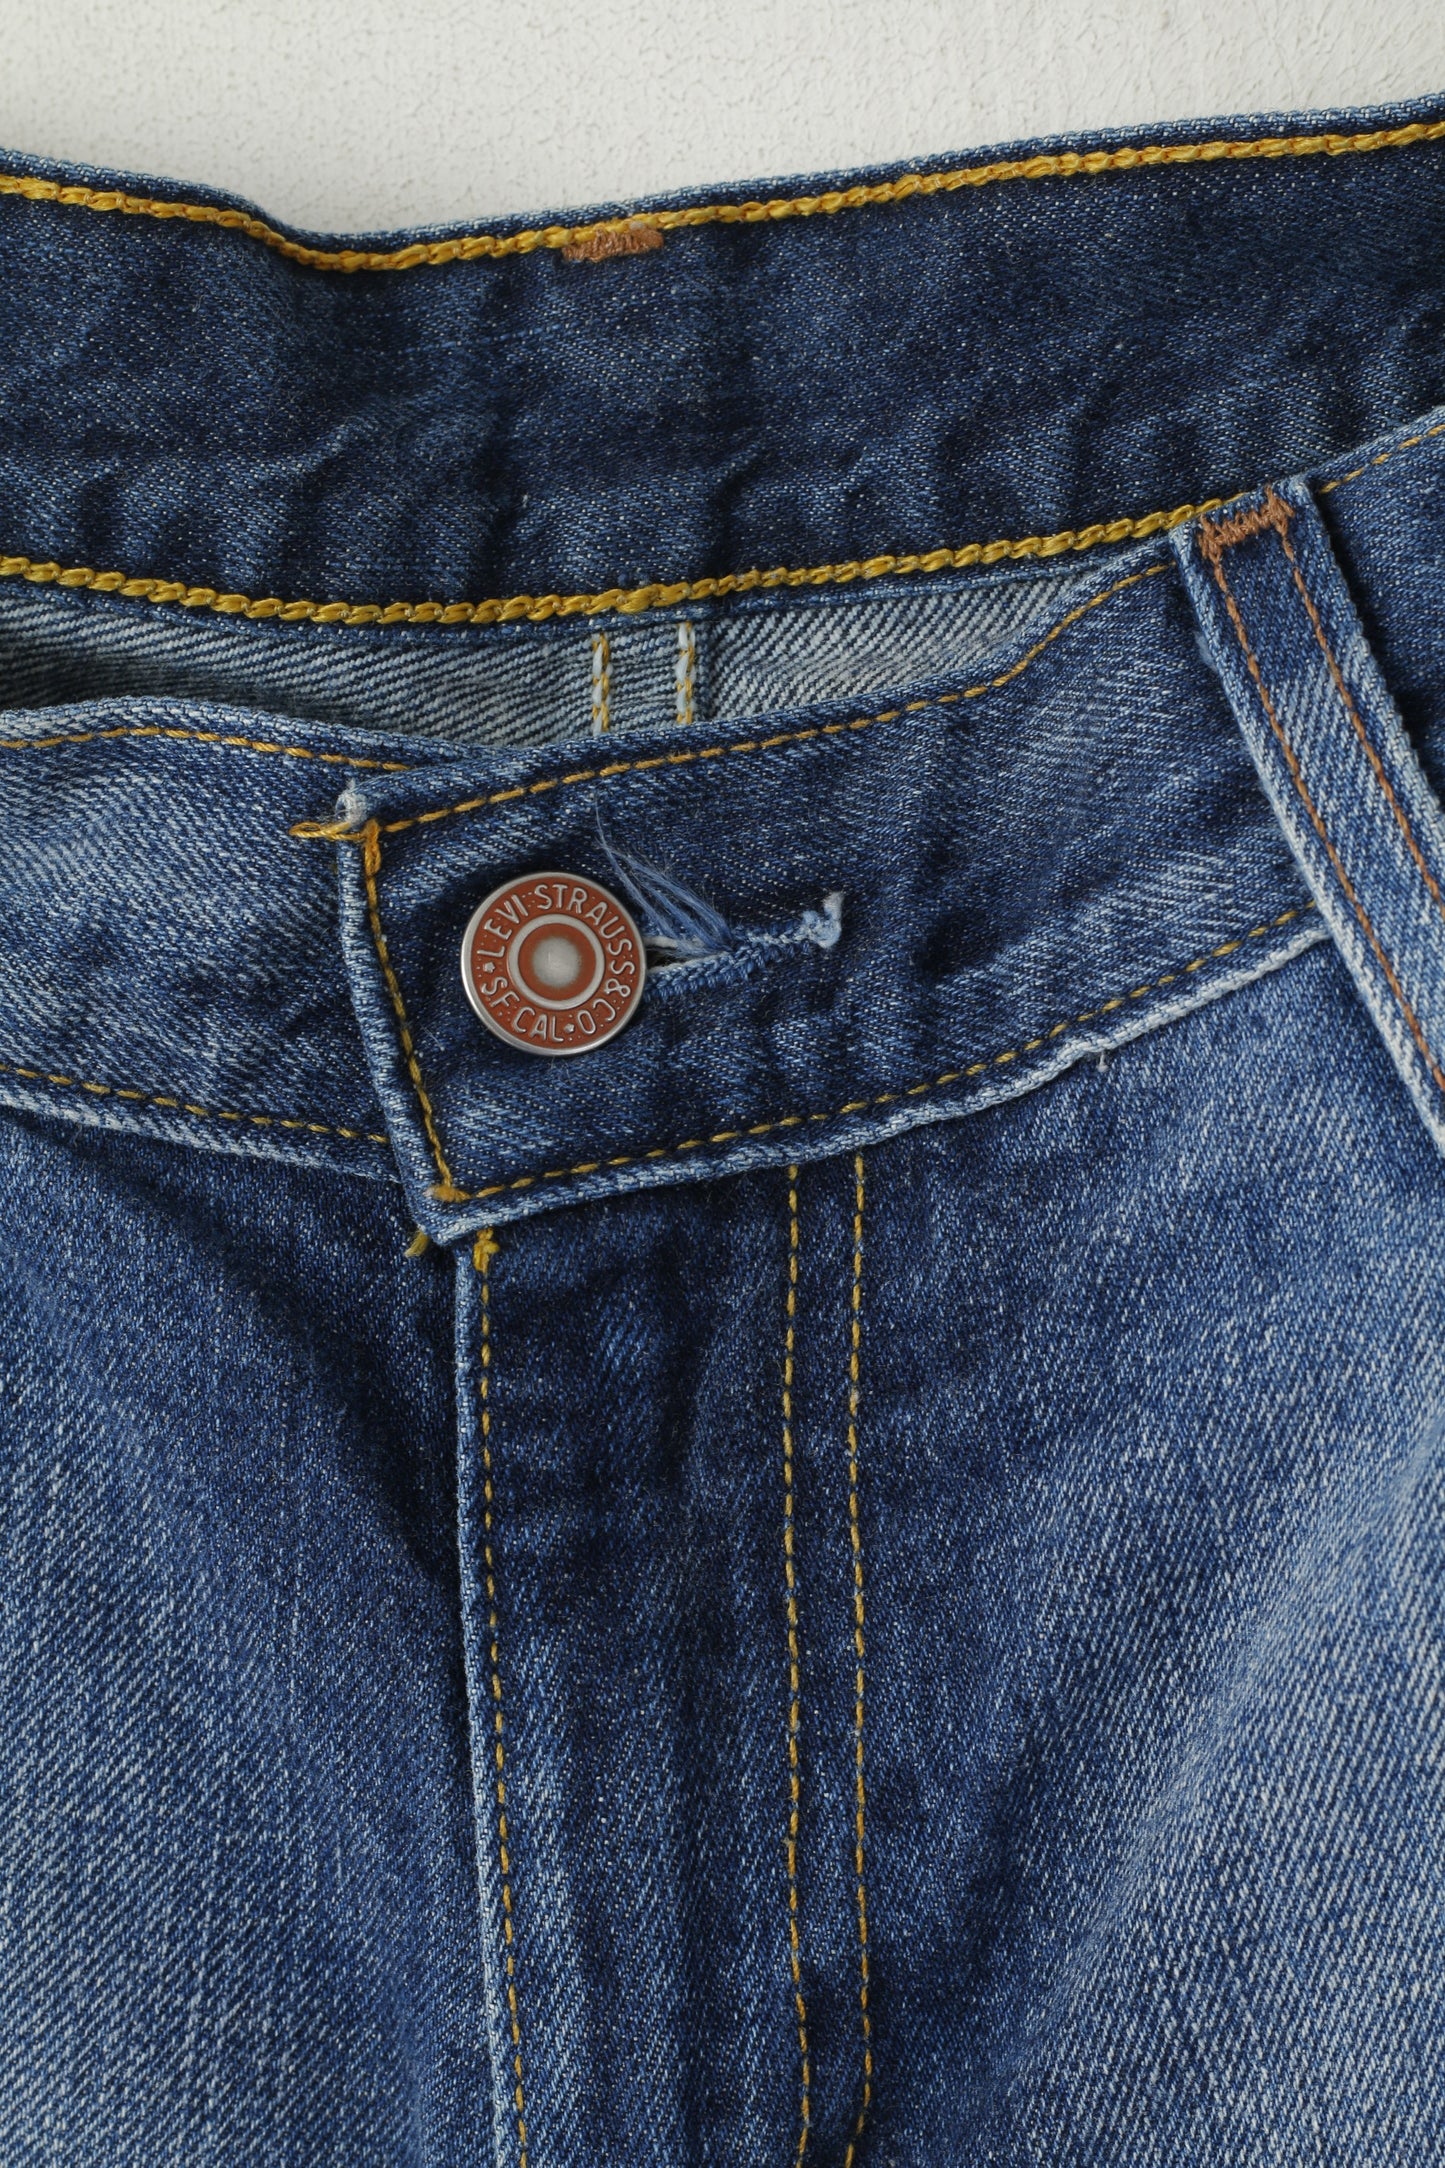 Levi's 529 Womens 32 Jeans Trousers Denim Cotton Navy Curve Bootcut Pants